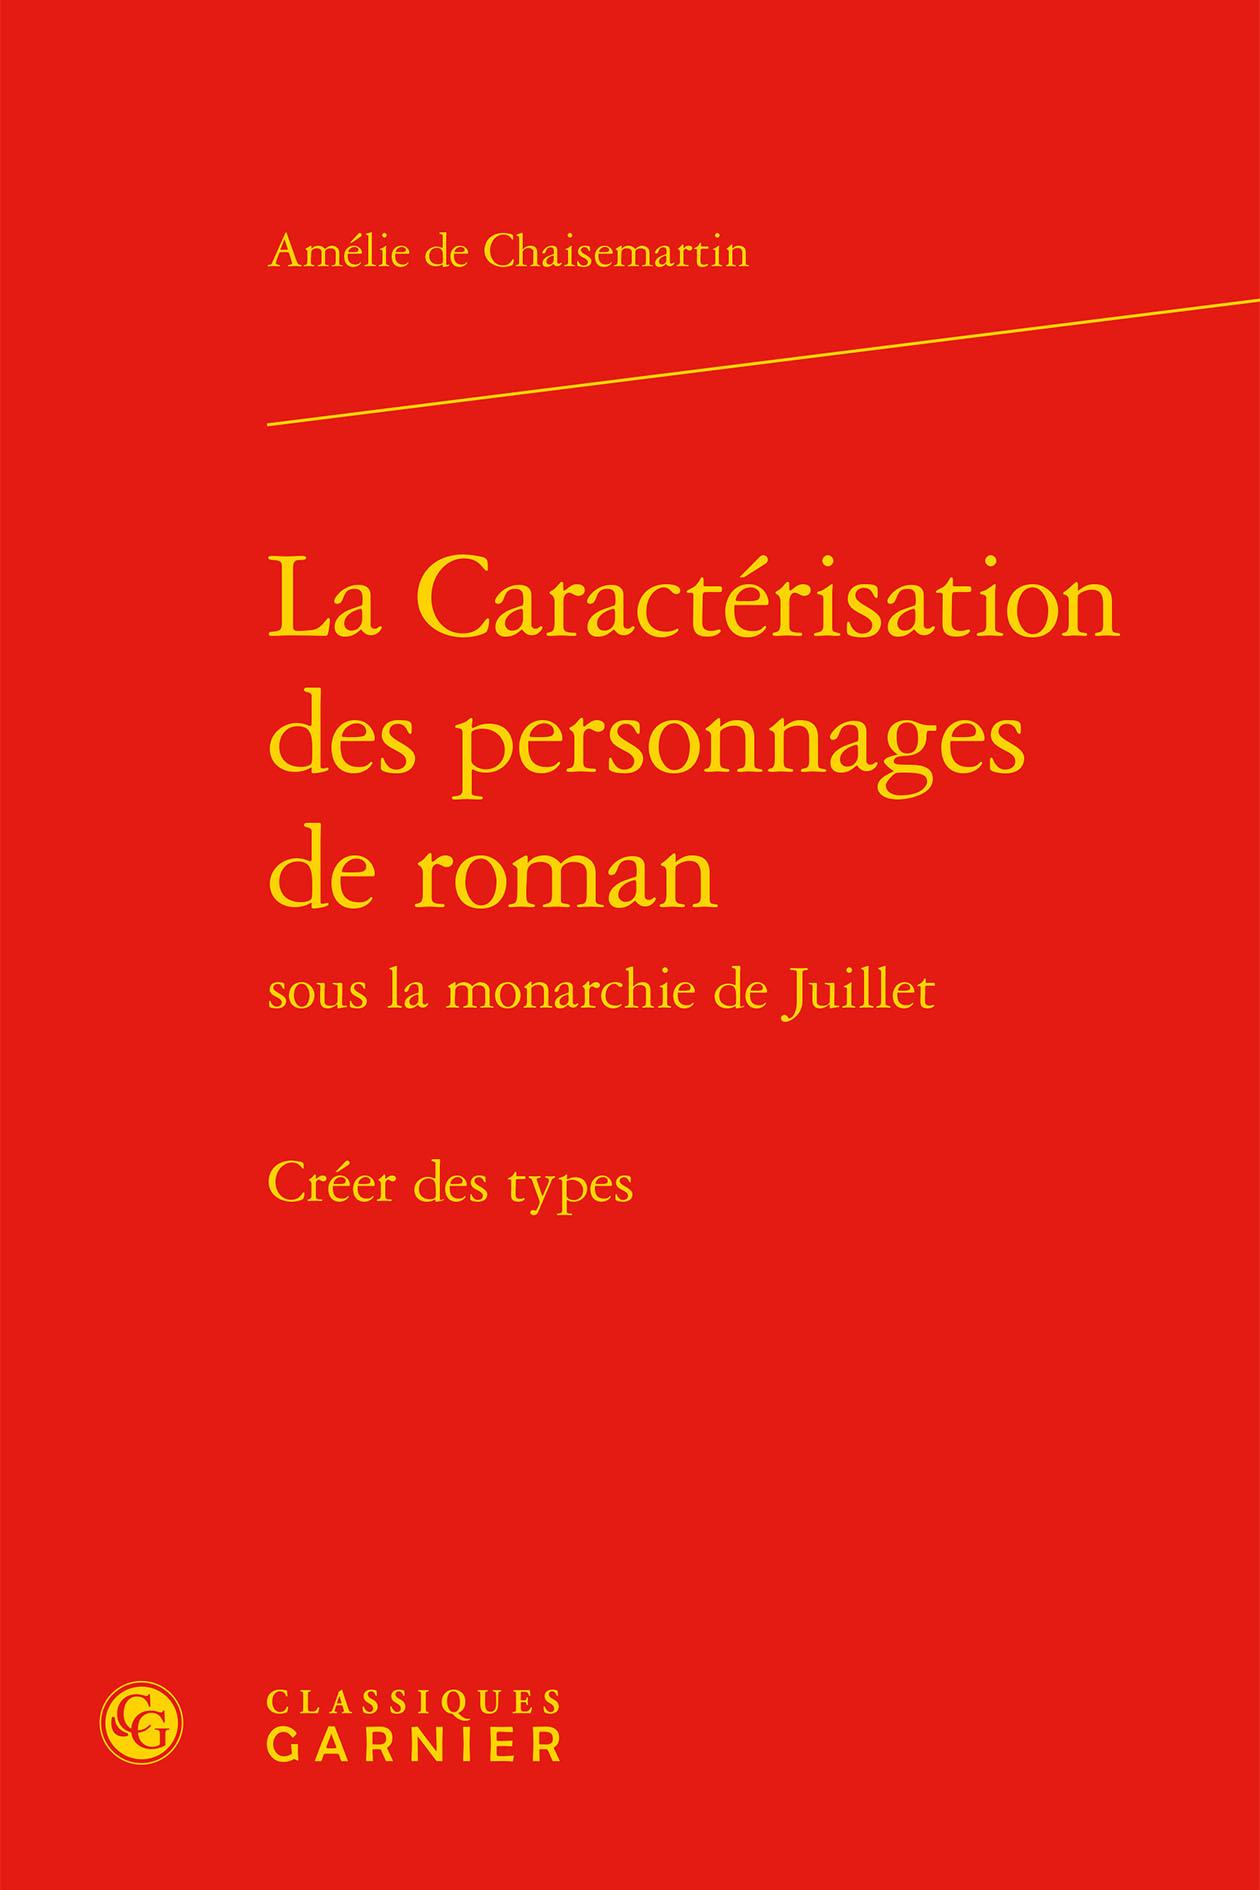 La Caractérisation des personnages de roman, Créer des types (9782406083252-front-cover)